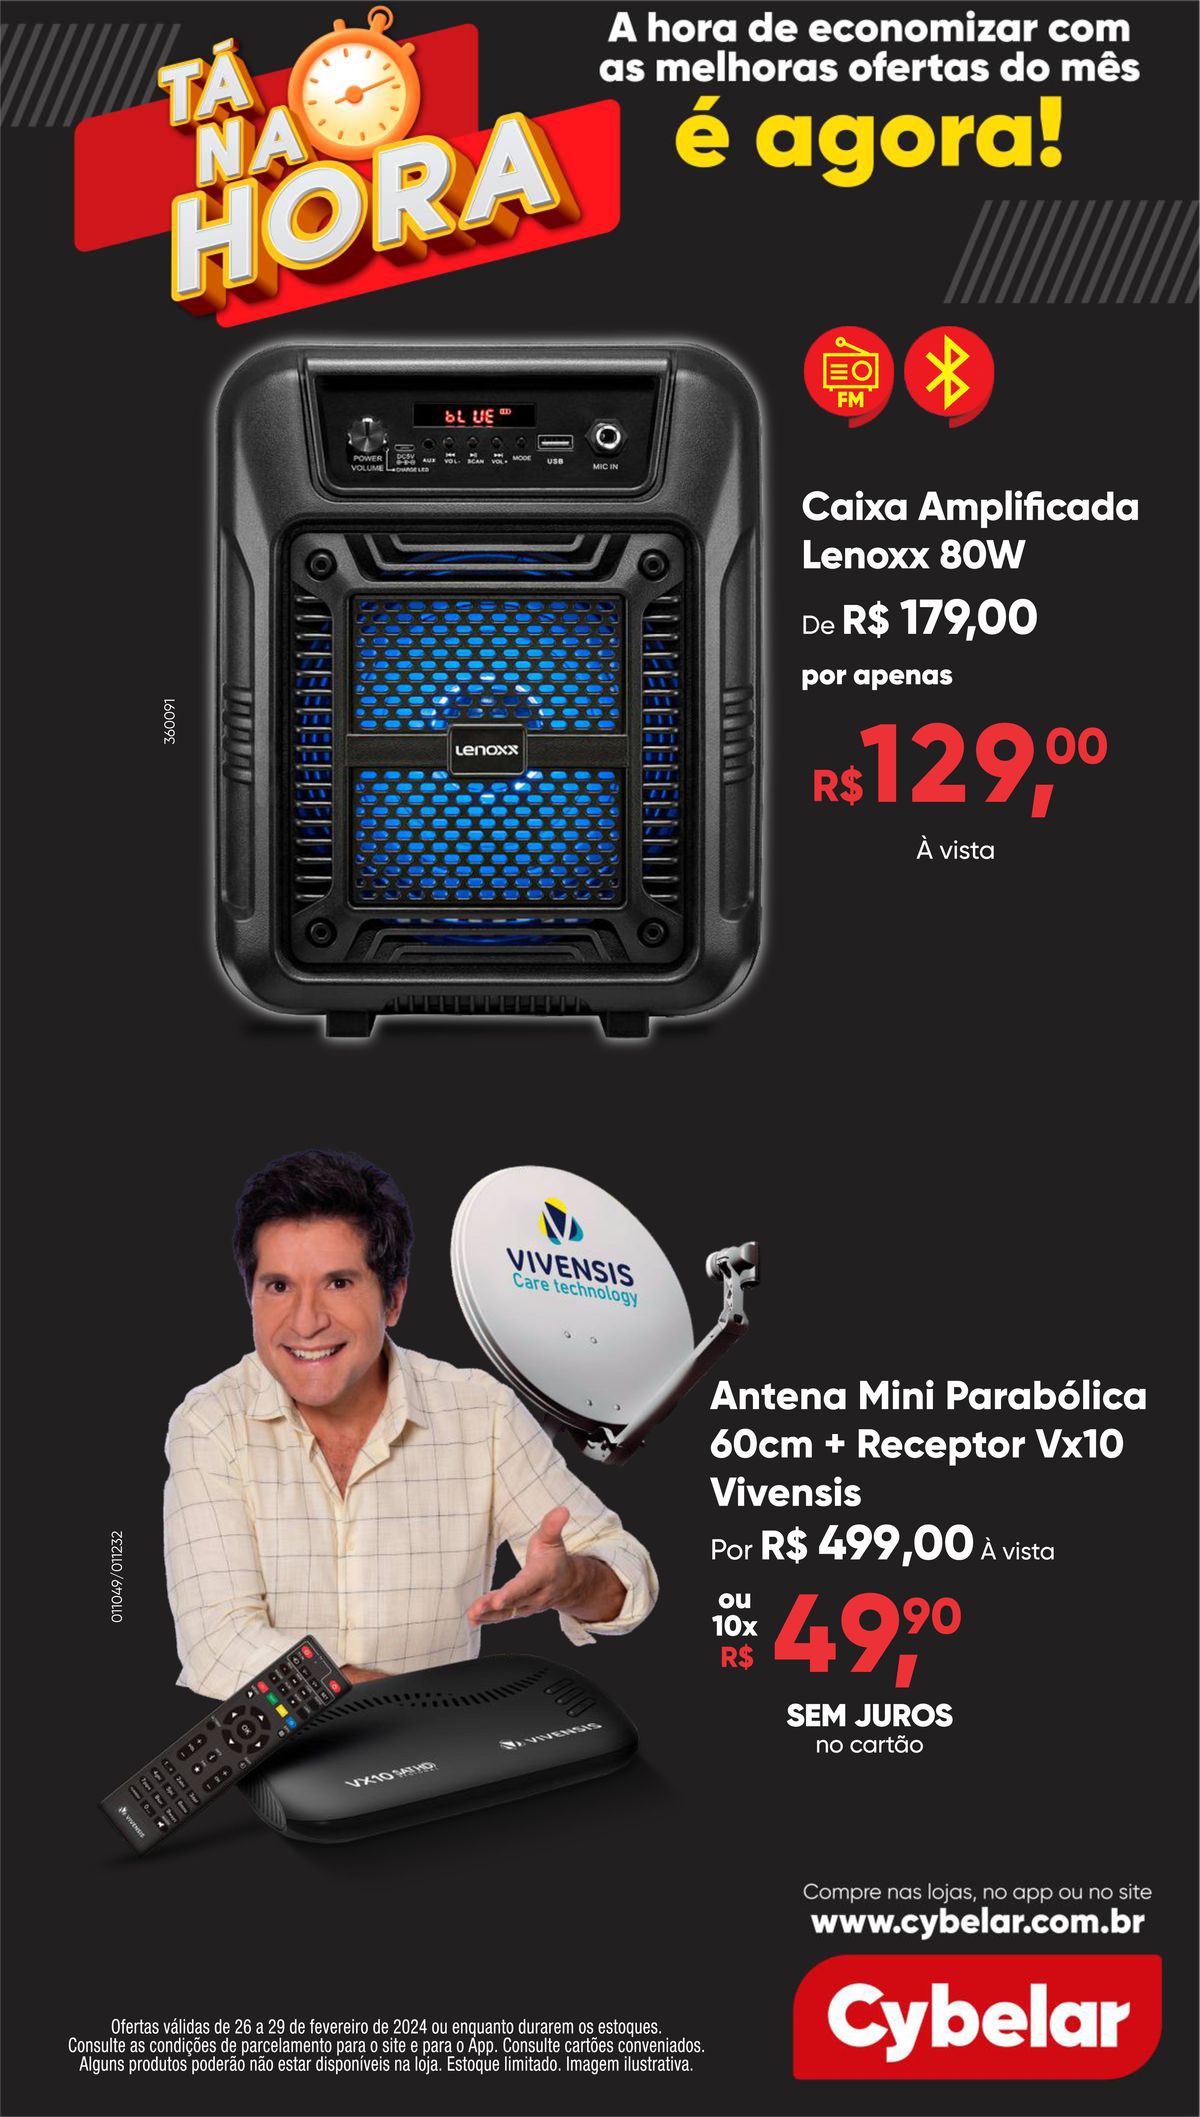 Caixa Amplificada Lenoxx 80W e Antena Mini Parabólica 60cm + Receptor Vx10 em oferta!